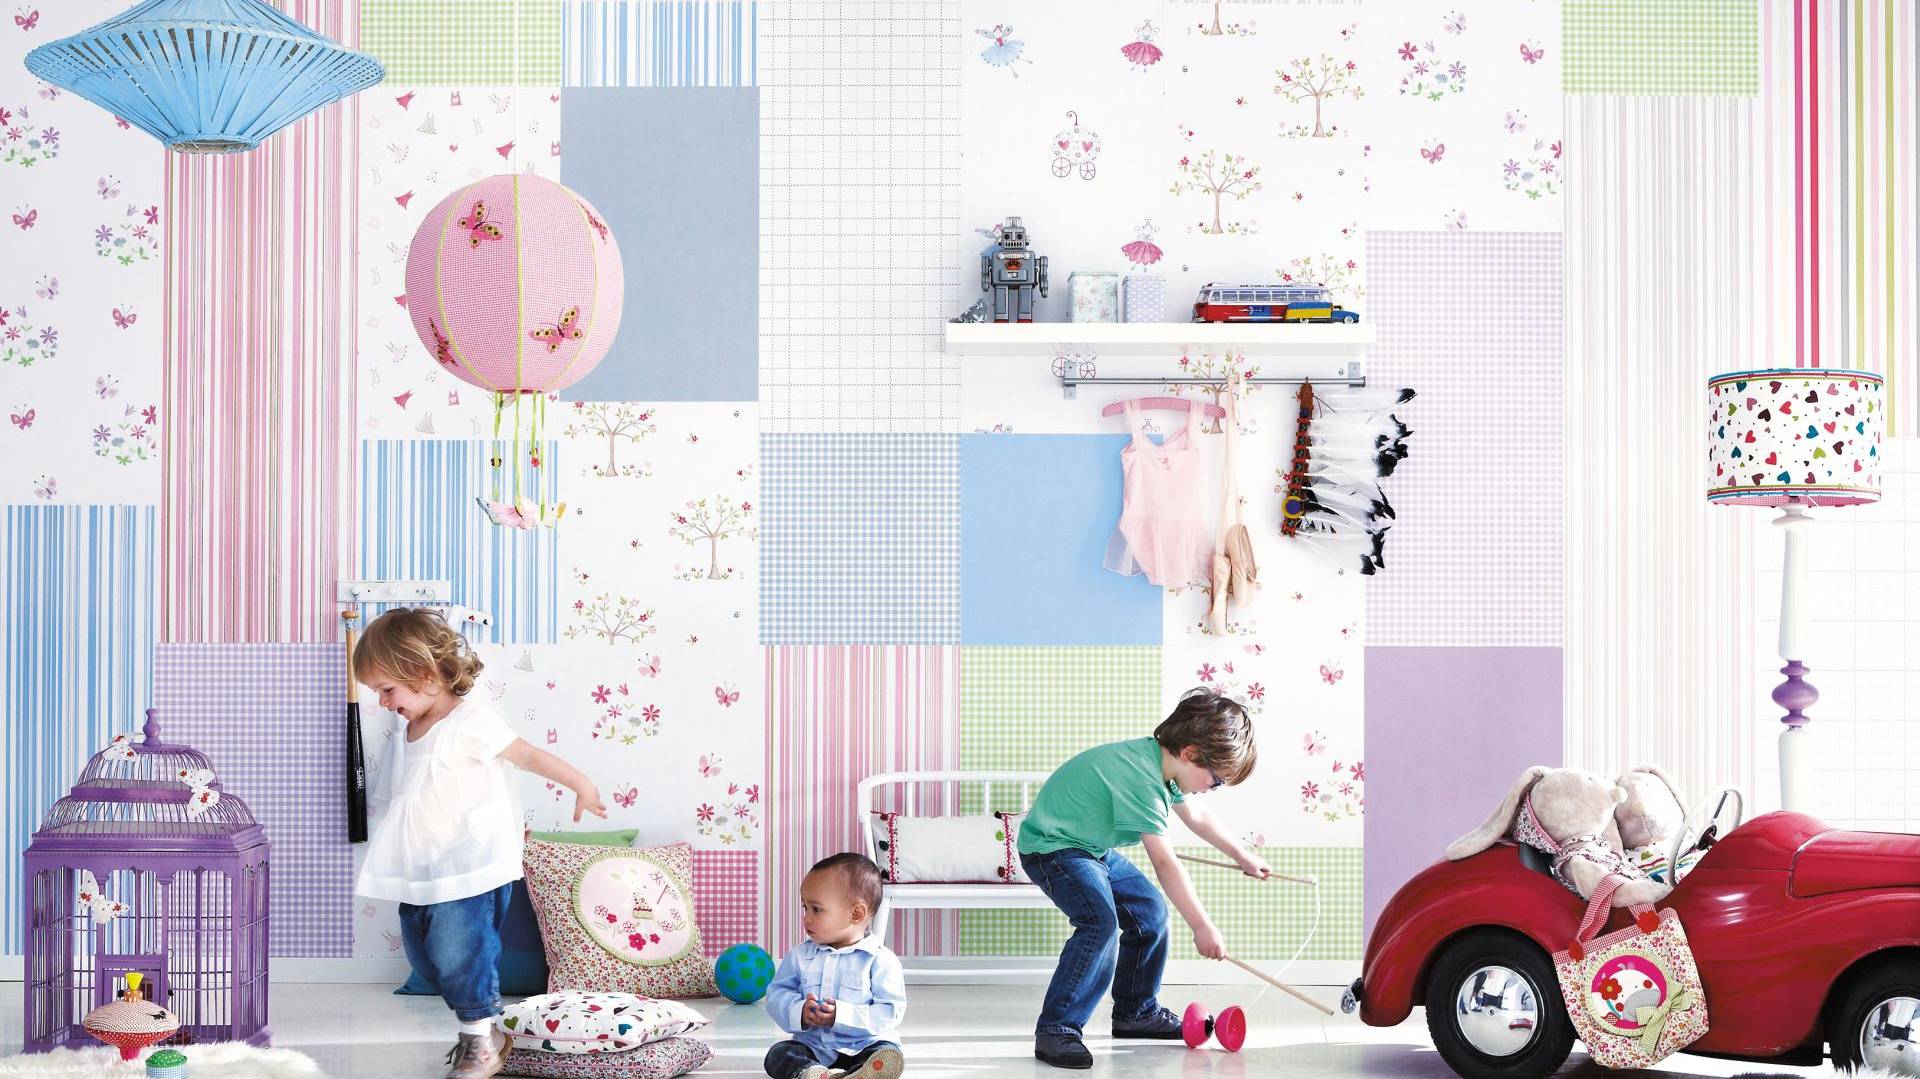 Детская в белых тонах: как оформить комнату так, чтобы она не смотрелась скучно? правила сочетания для стильных интерьеров (140+ фото)